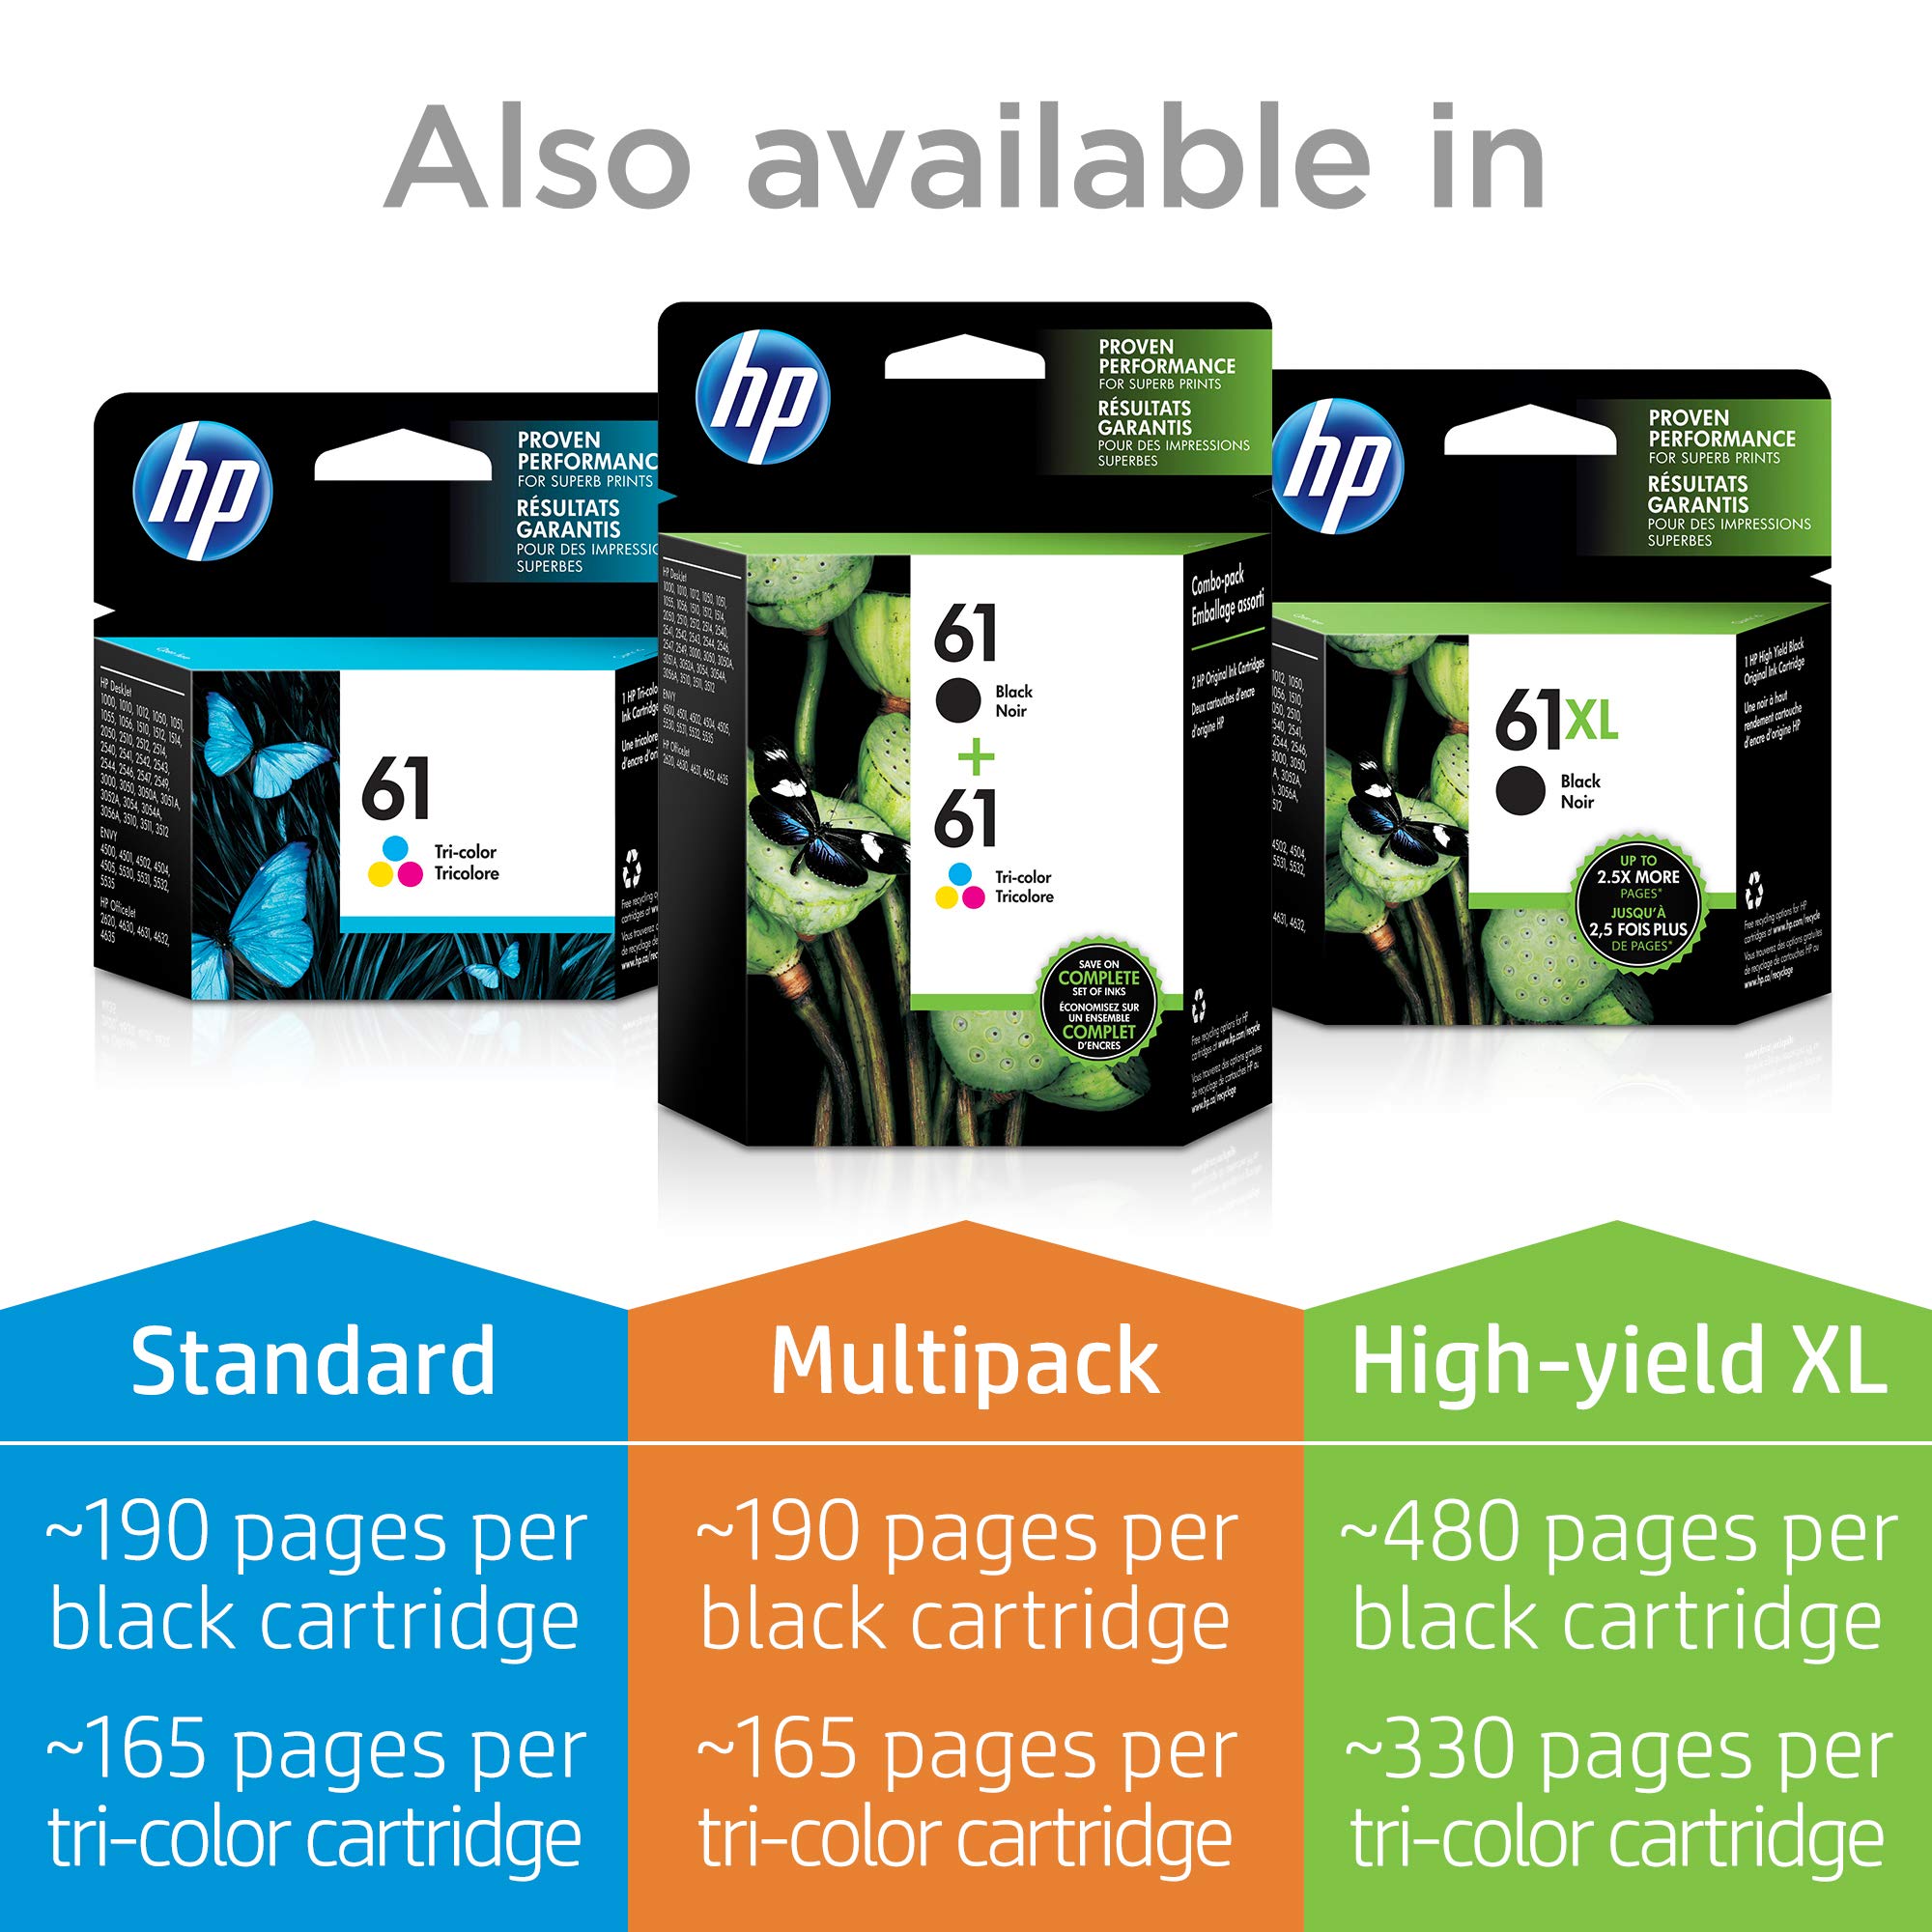 HP 61 | 2 Ink Cartridges | Black | Works with HP DeskJet 1000 1500 2050 2500 3000 3500 Series, HP ENVY 4500 5500 Series, HP OfficeJet 2600 4600 Series | CZ073FN